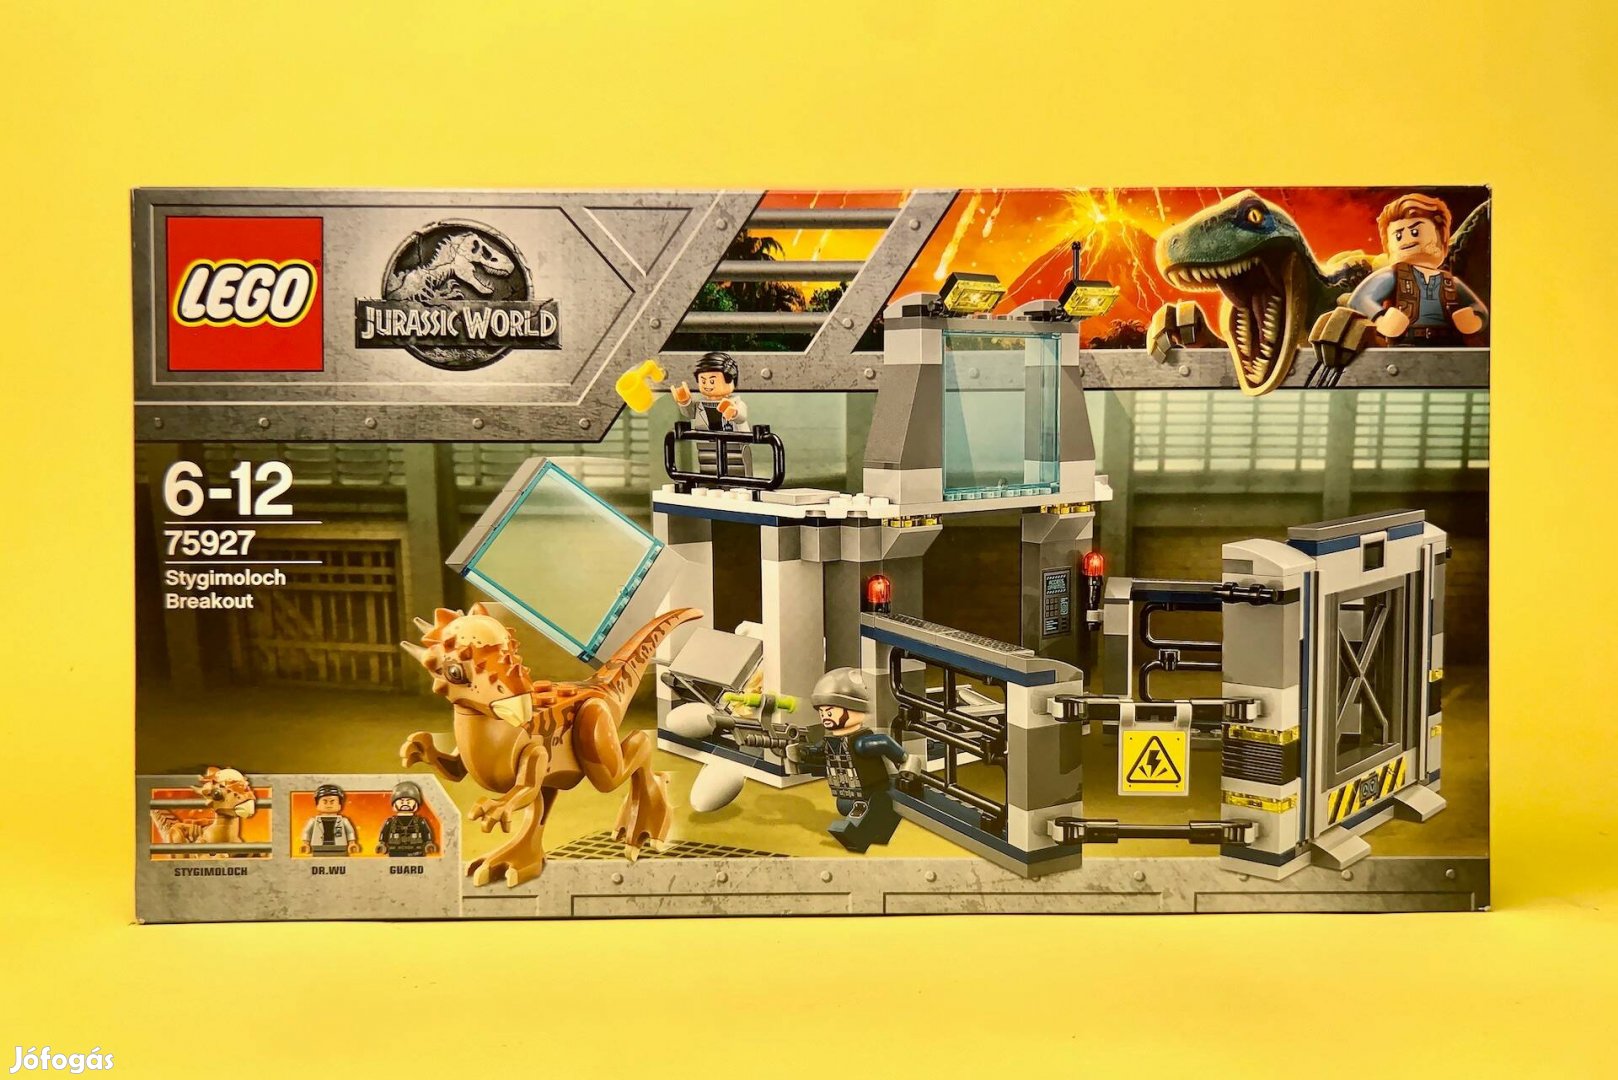 LEGO Jurassic World 75927 Stygimoloch Breakout, Uj, Bontatlan